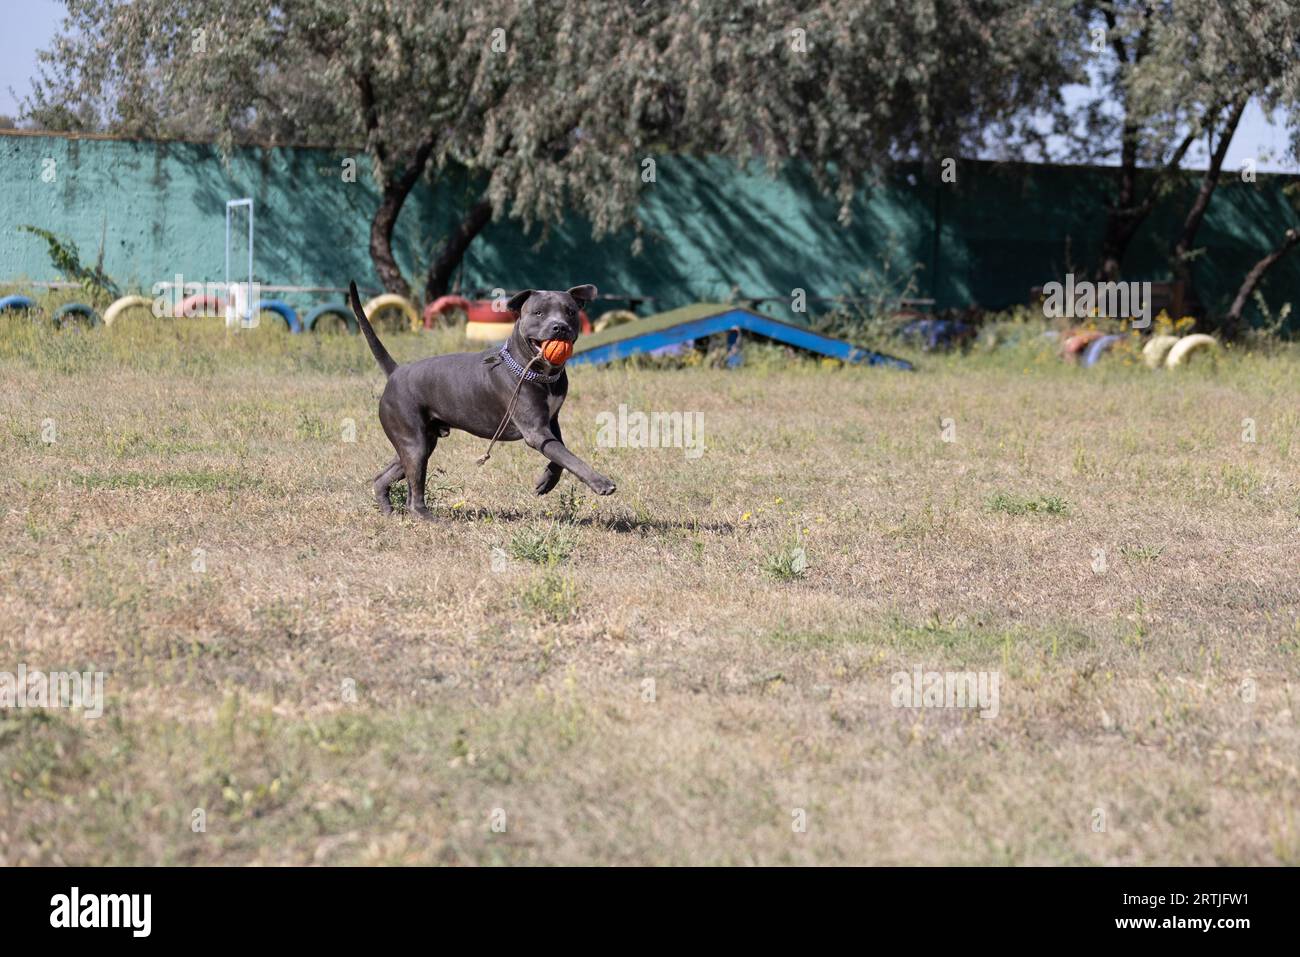 Magnifique portrait de Bull terrier staffordshire sur une pelouse verte en gros plan. Bleu bouché, langue sortie. Blue american staffordshire terrier, amstaff. Couper Banque D'Images